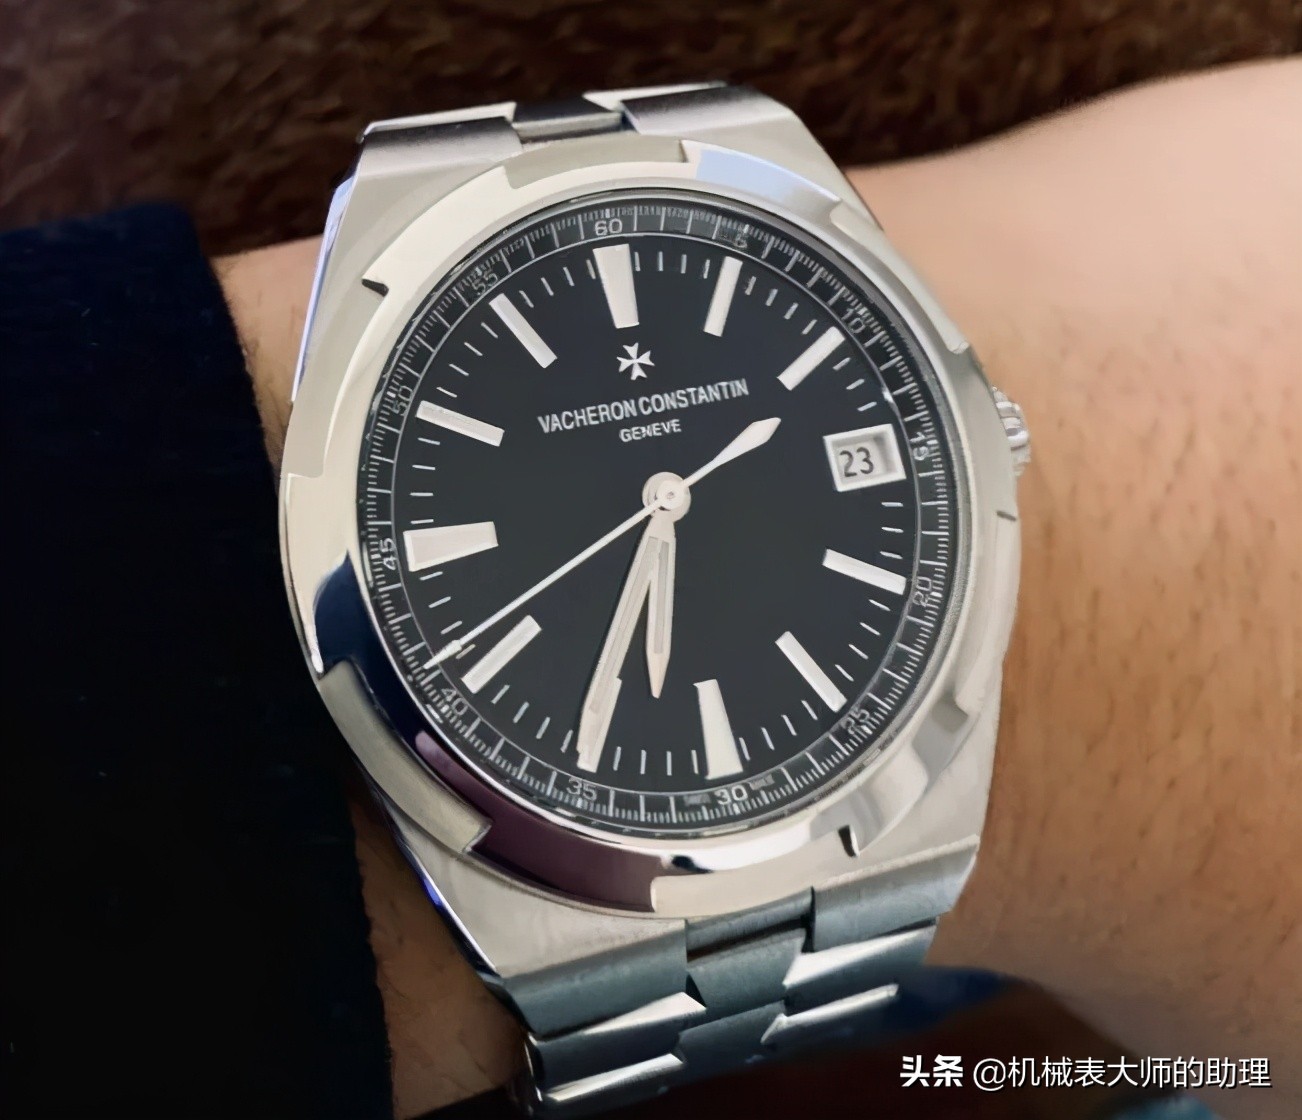 30-45岁成熟男性最喜爱的六个品牌的手表款式